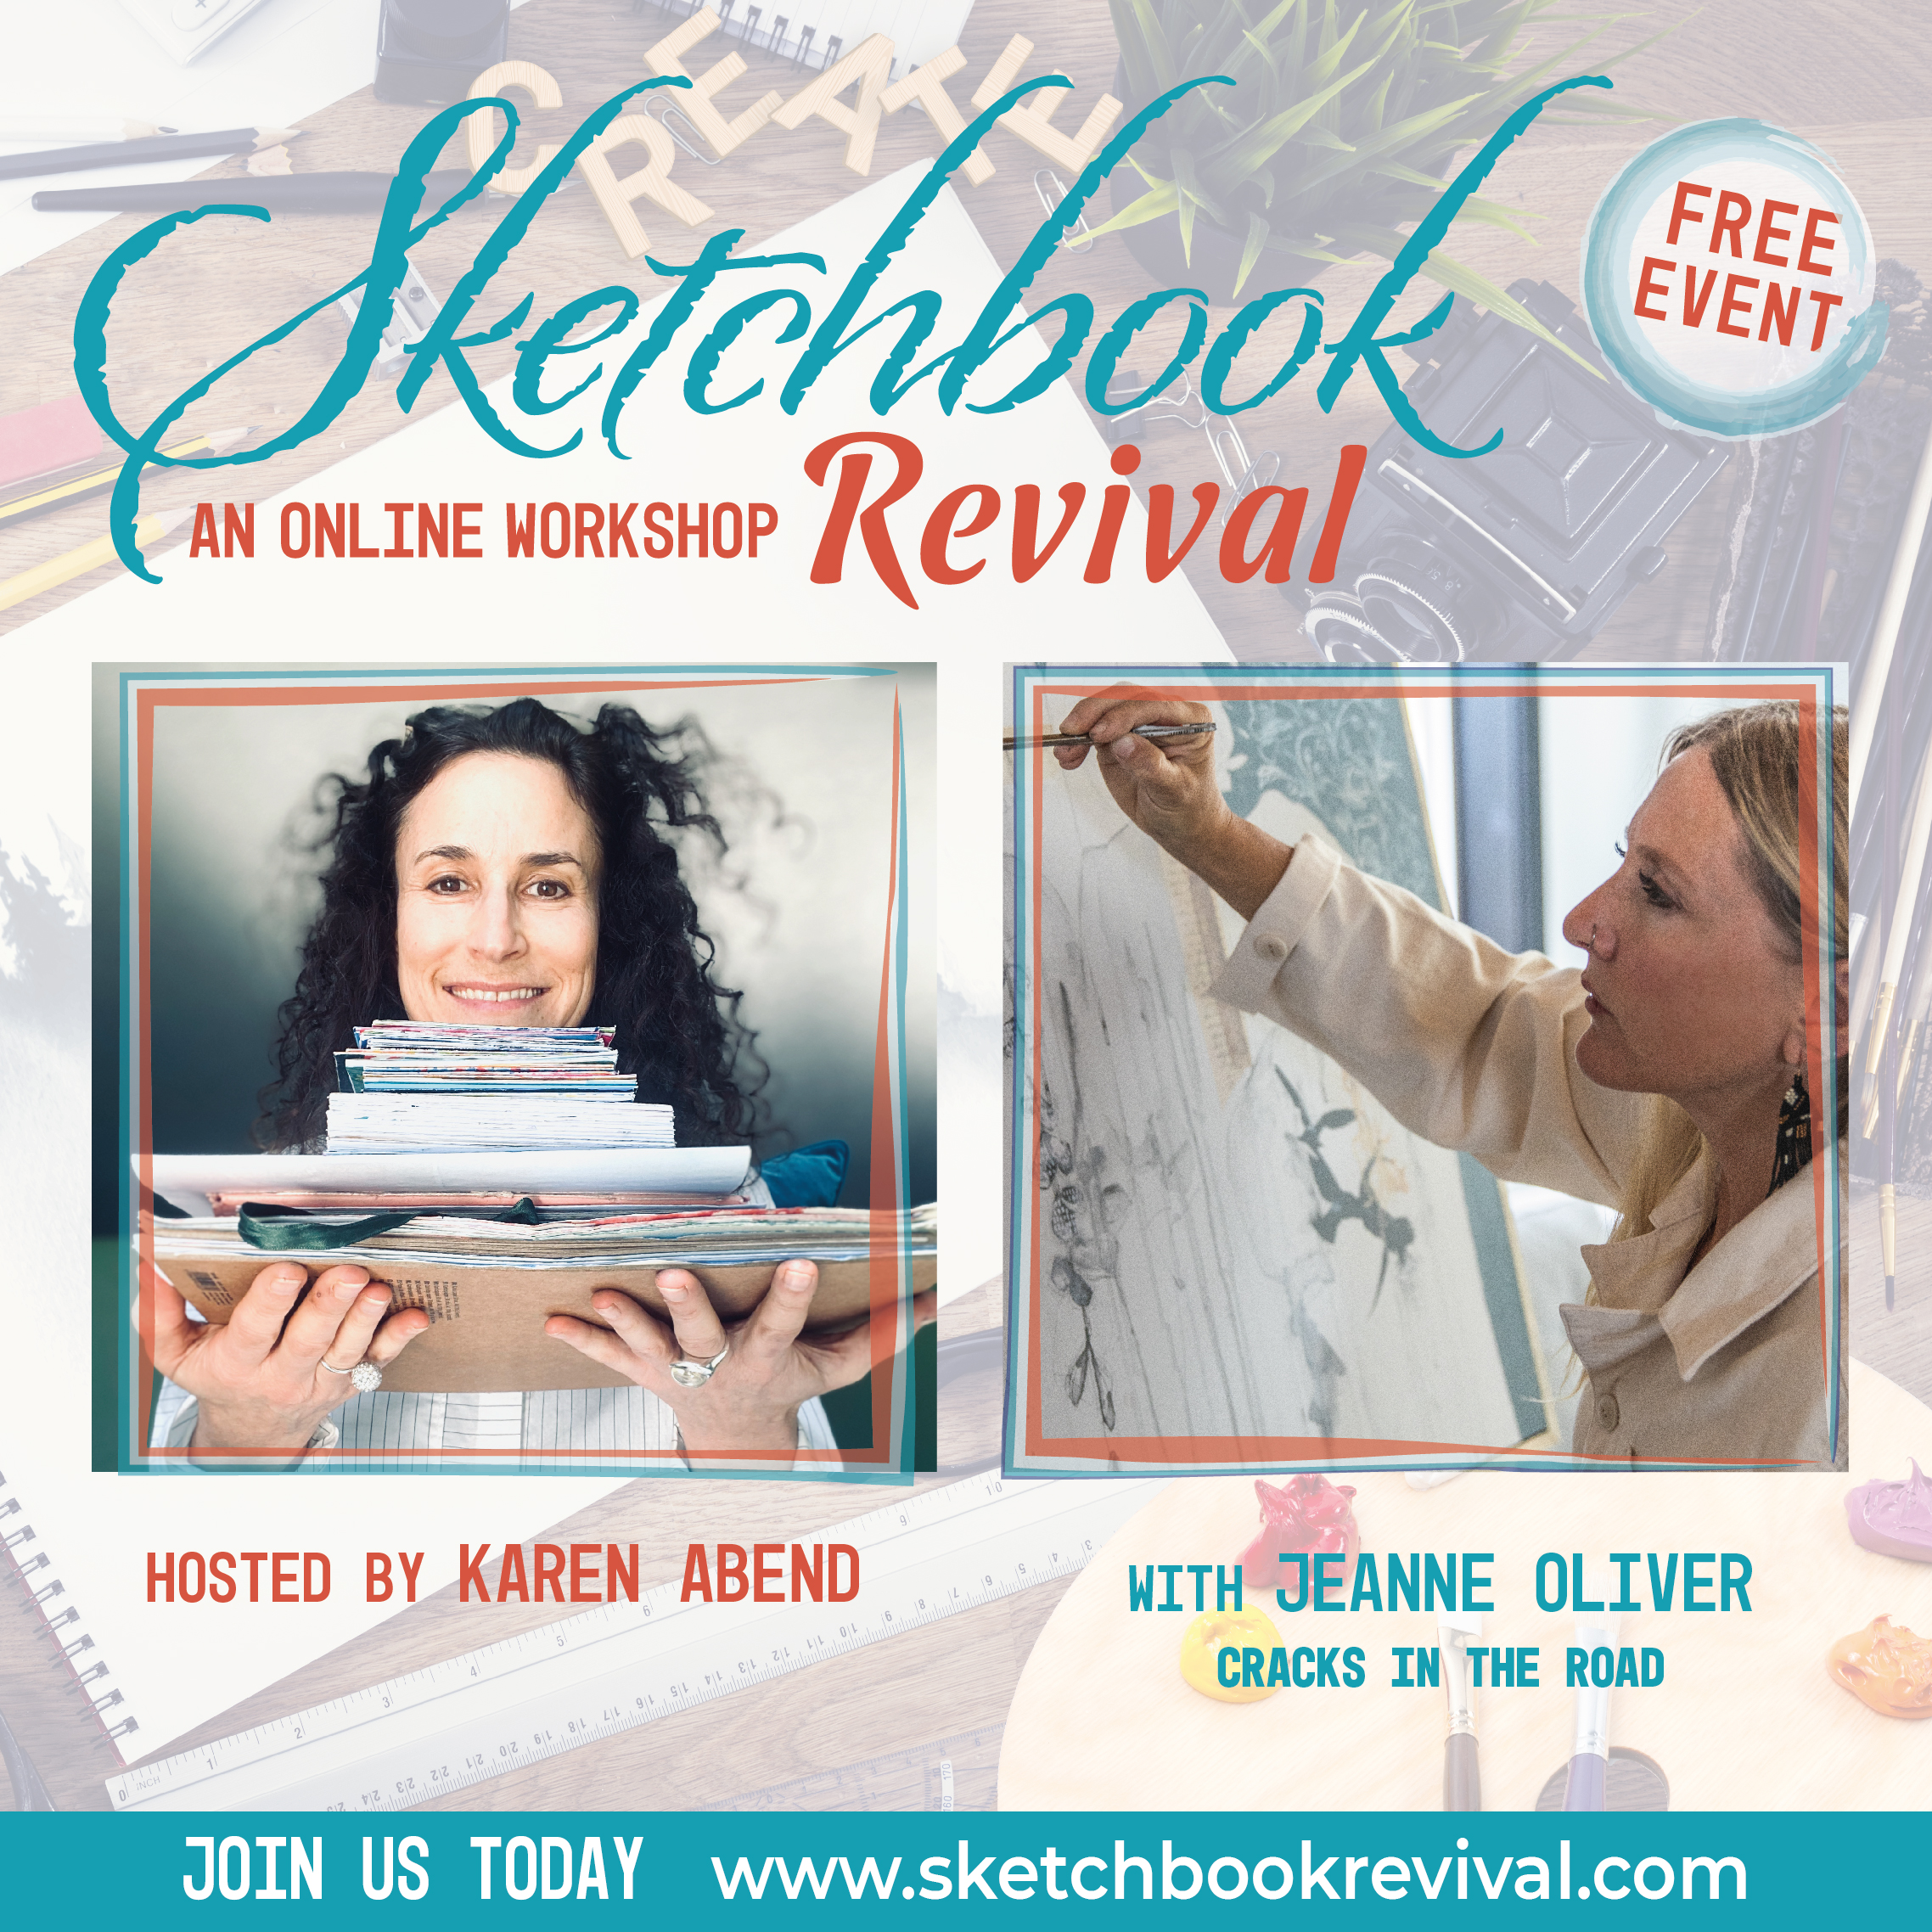 Sketchbook Revival Online Workshop 2021 | A Free Workshop and I am an Instructor